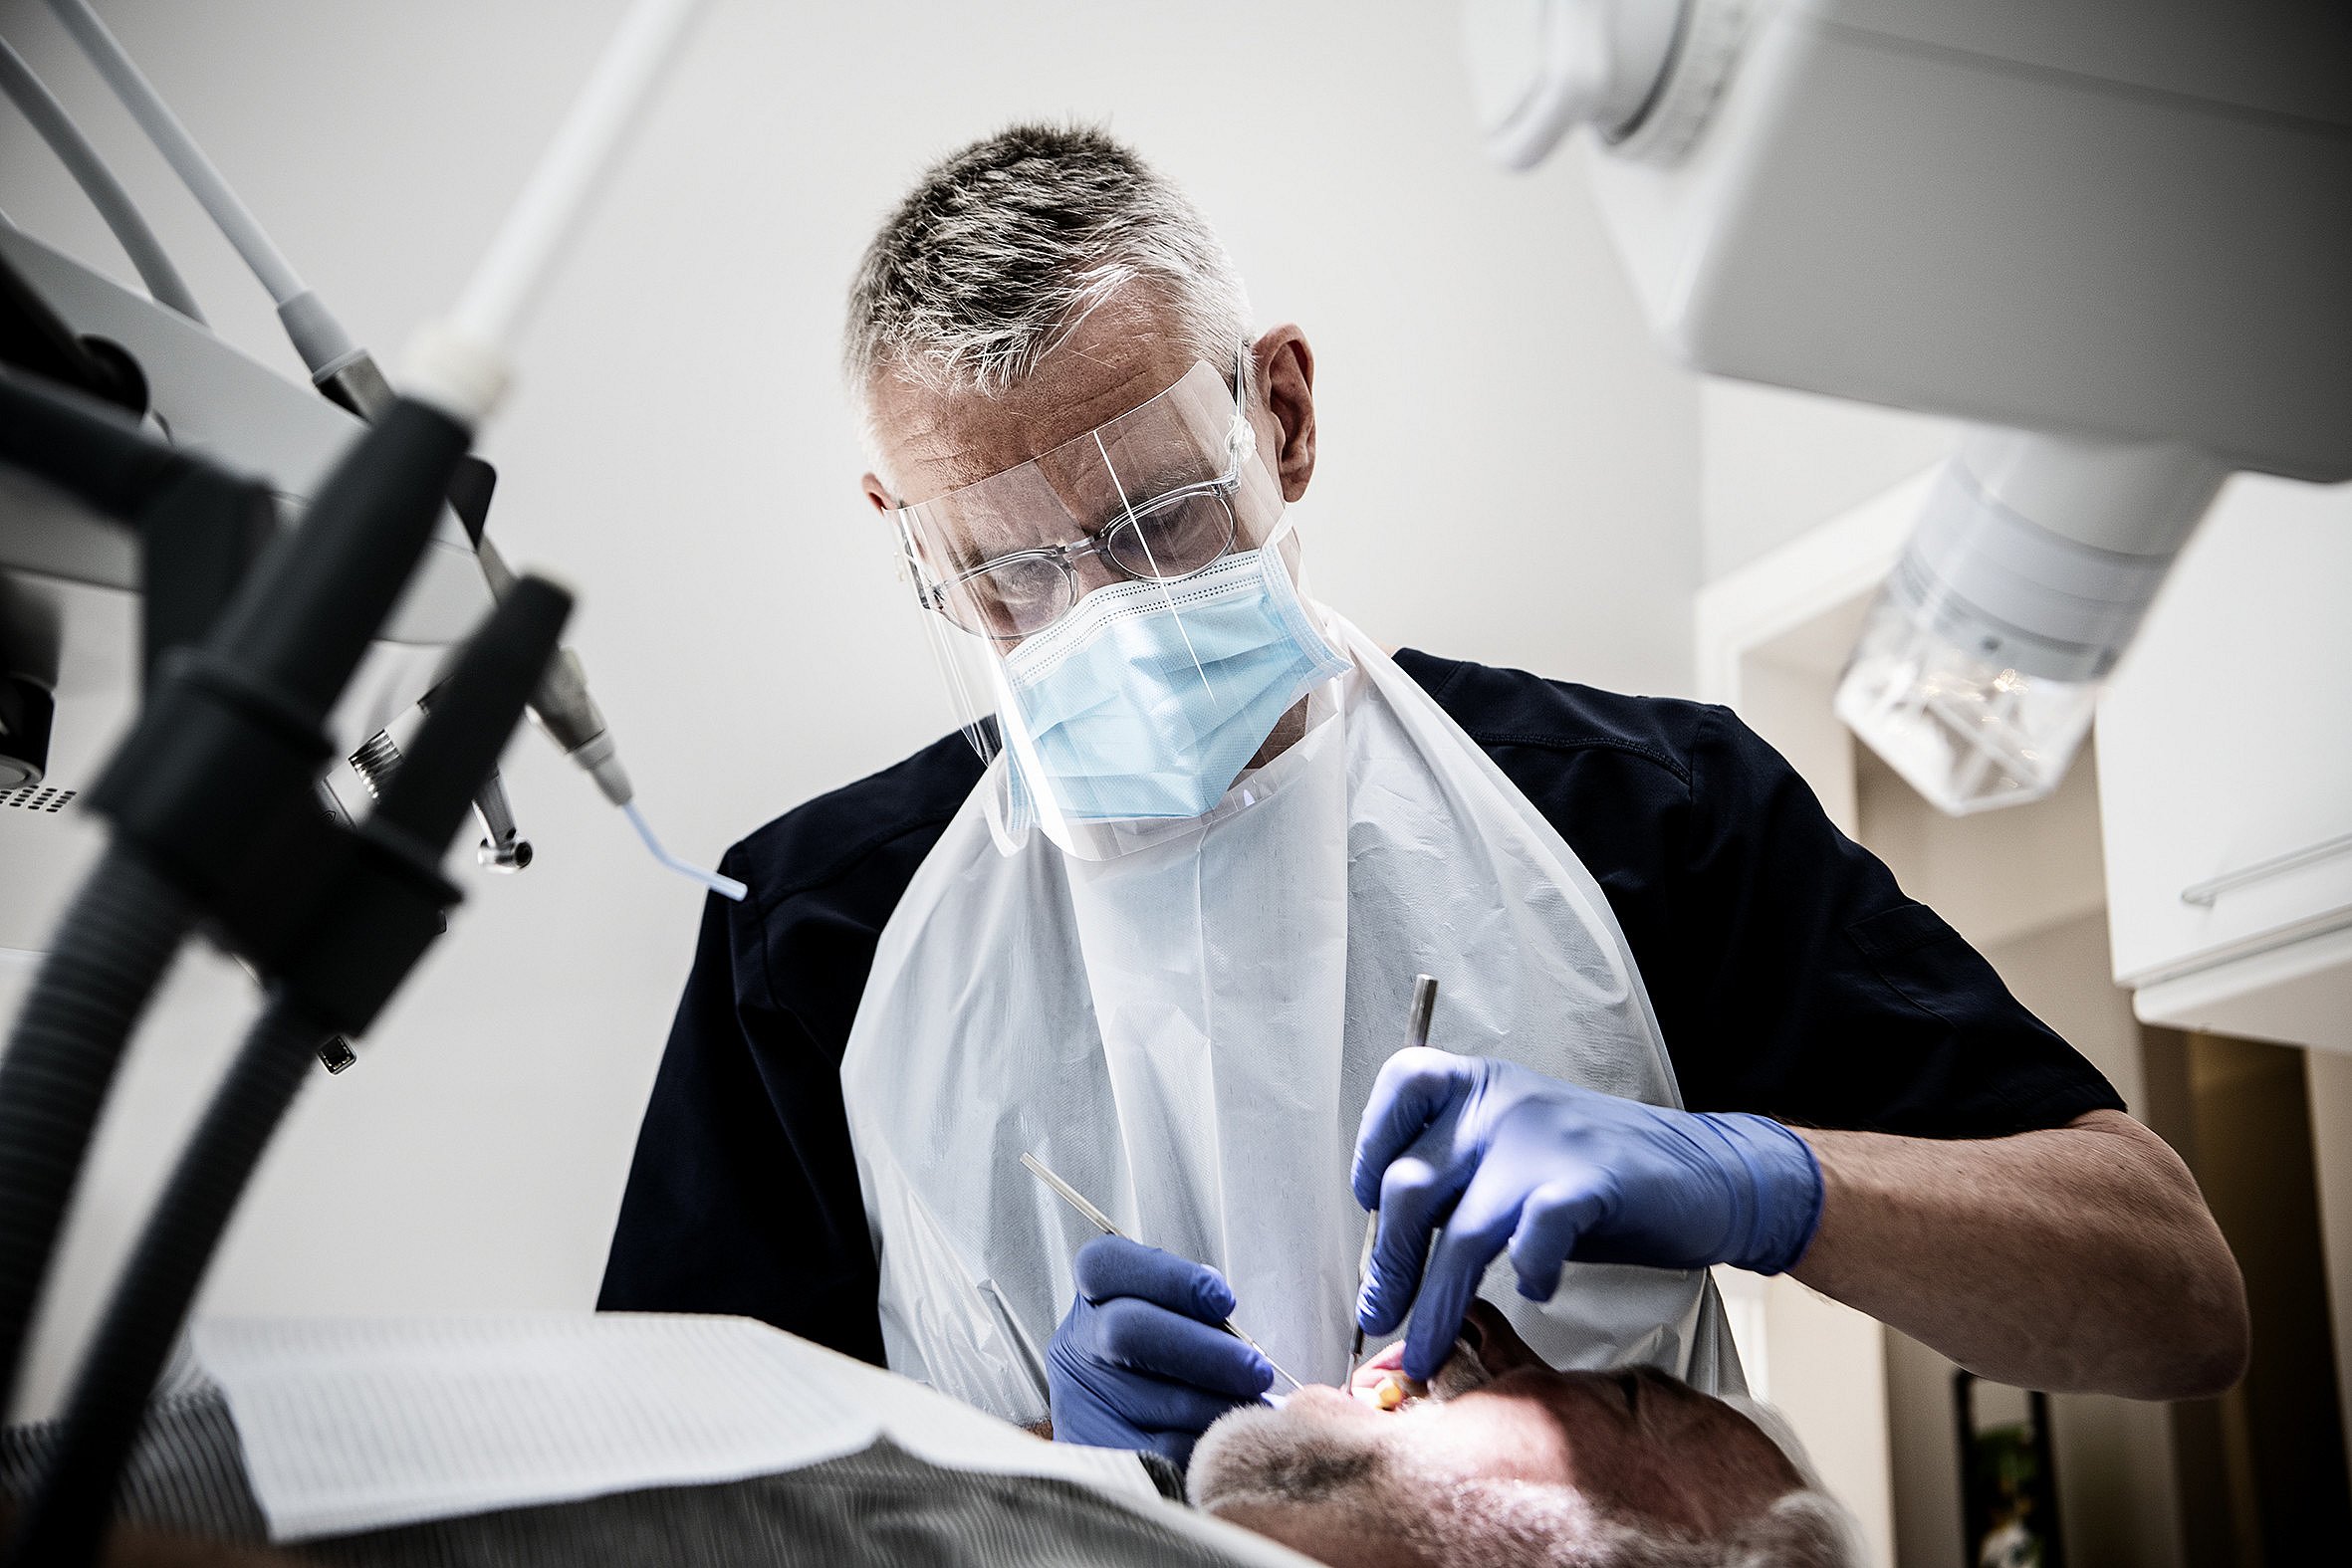 Tandlæger får påbud for at med coronabeskyttelse | TV2 Østjylland